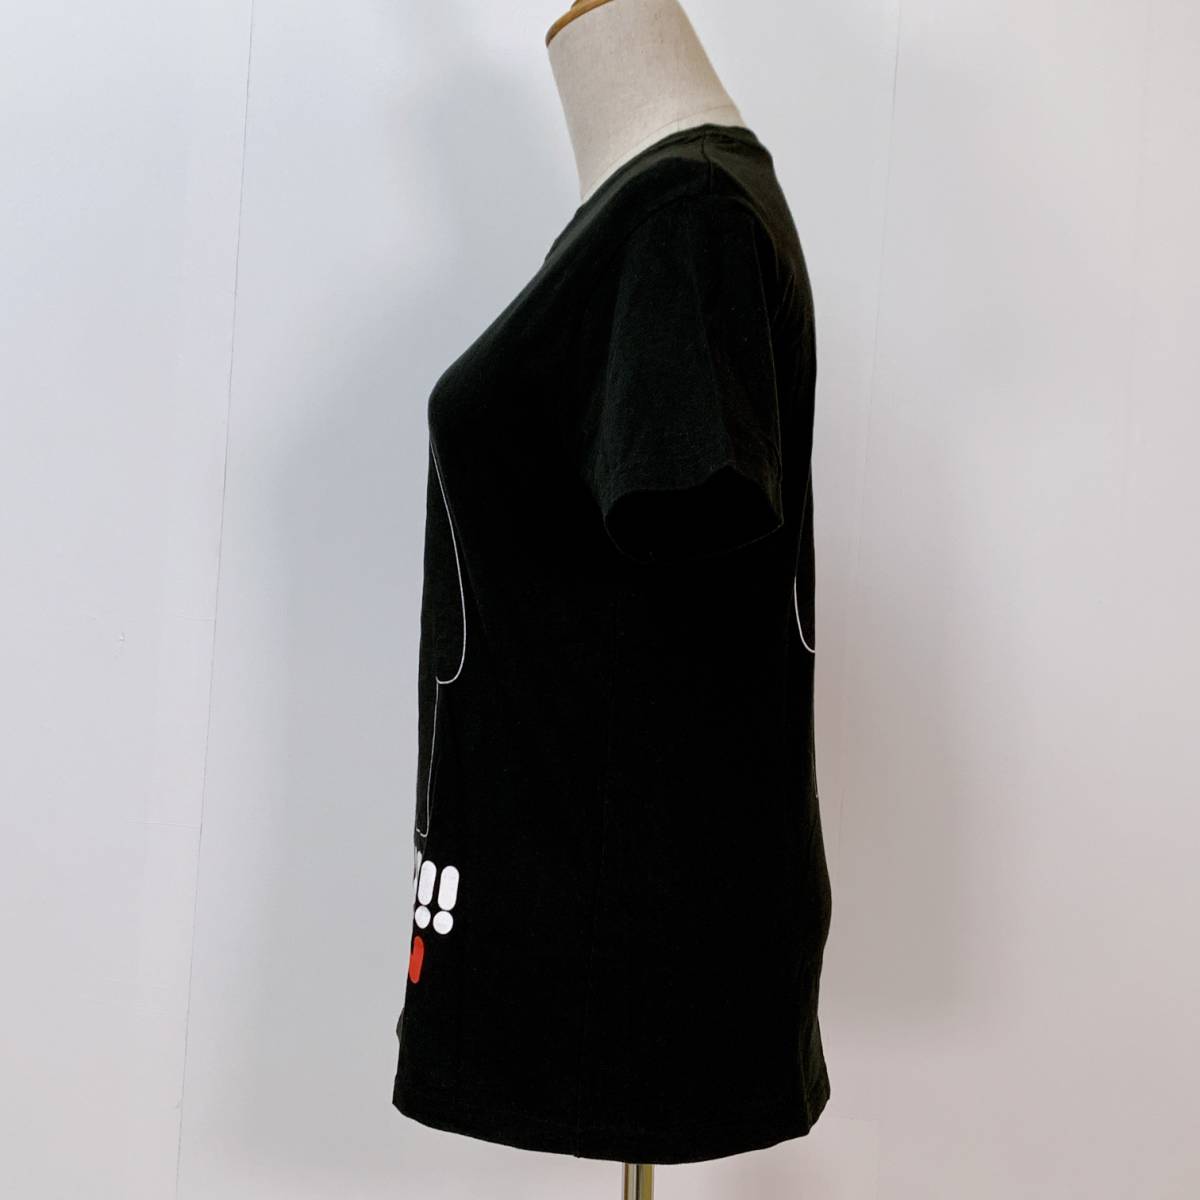 S2041 メンズ Tシャツ 半袖 人気 S 黒 ビッグロゴ 綿100% 万能 かわいい シンプルデイリーカジュアル くまモン _画像4